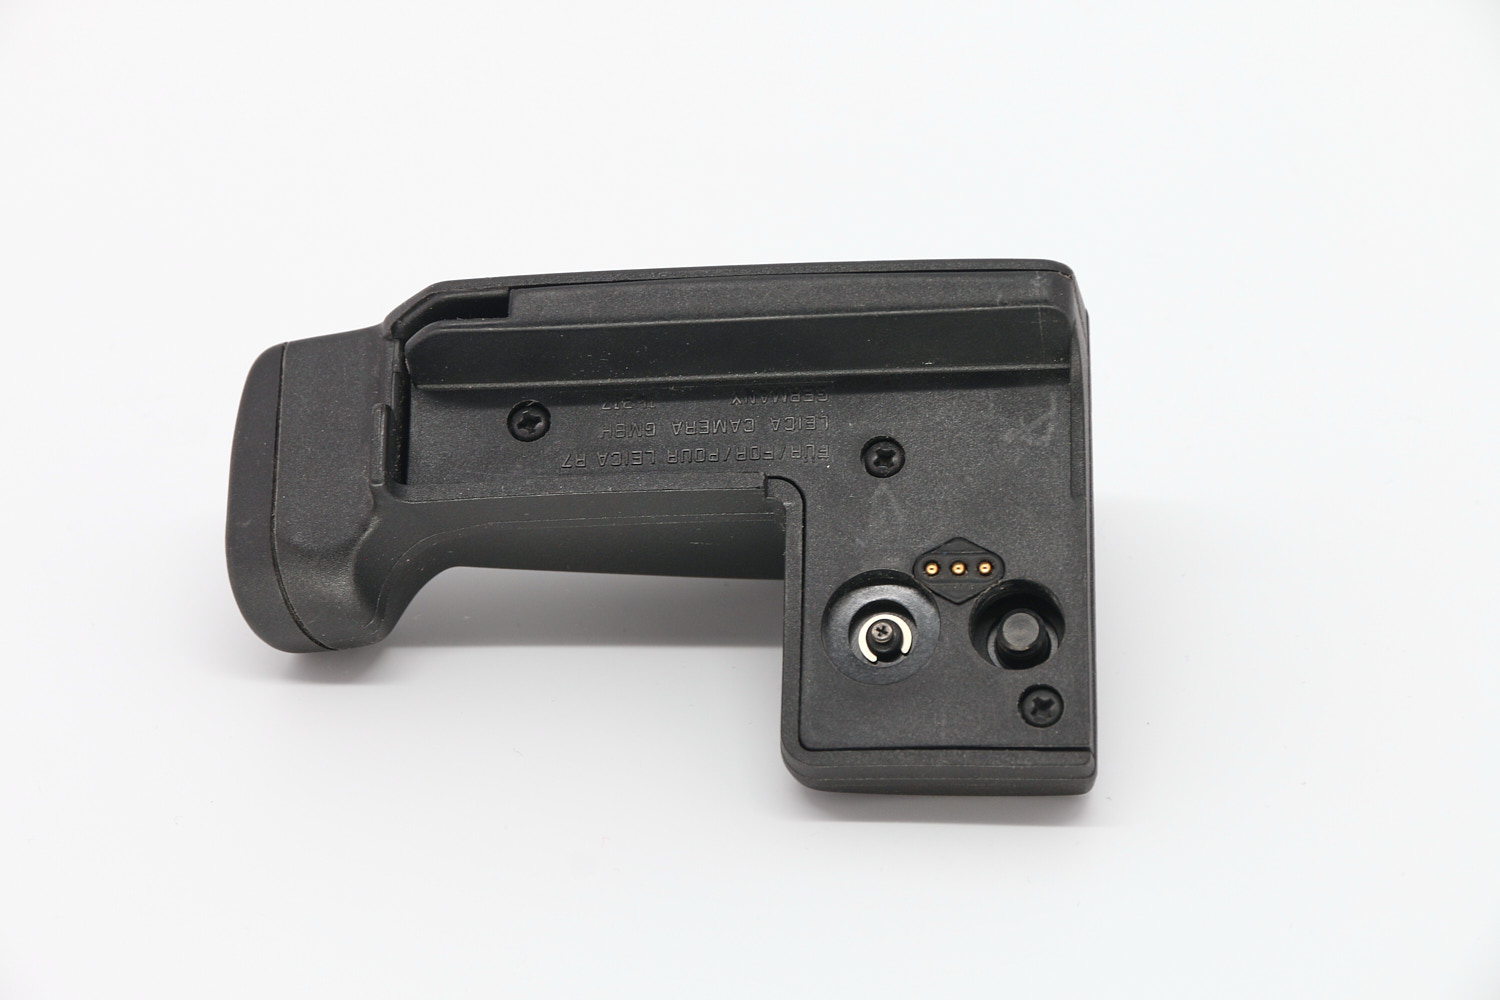 Leica Handgriff für Motor Winder R7 gebraucht Bild 02